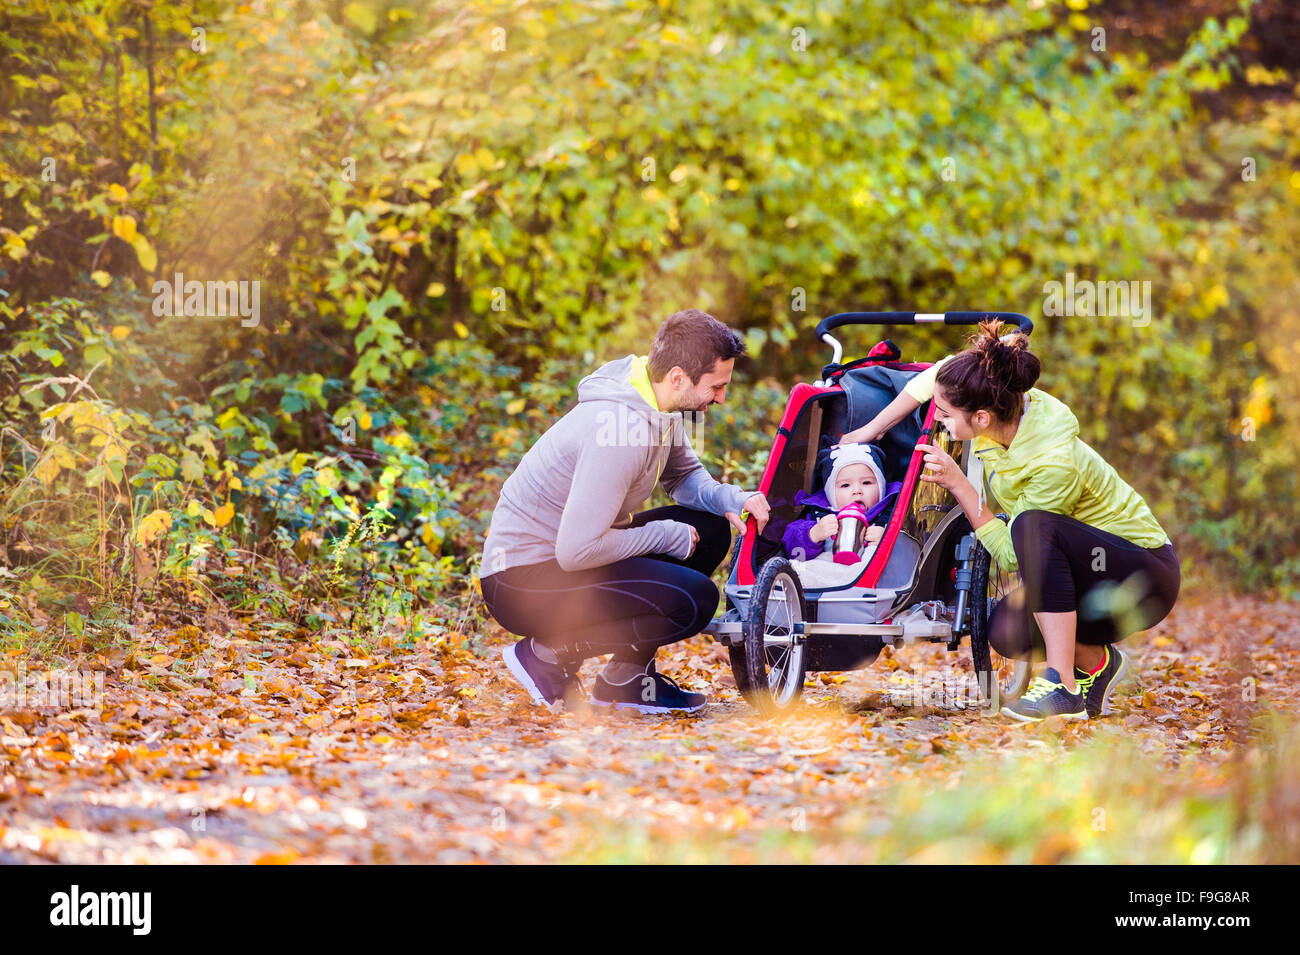 Beau jeune famille avec bébé en poussette fonctionne en dehors de la nature en automne Banque D'Images